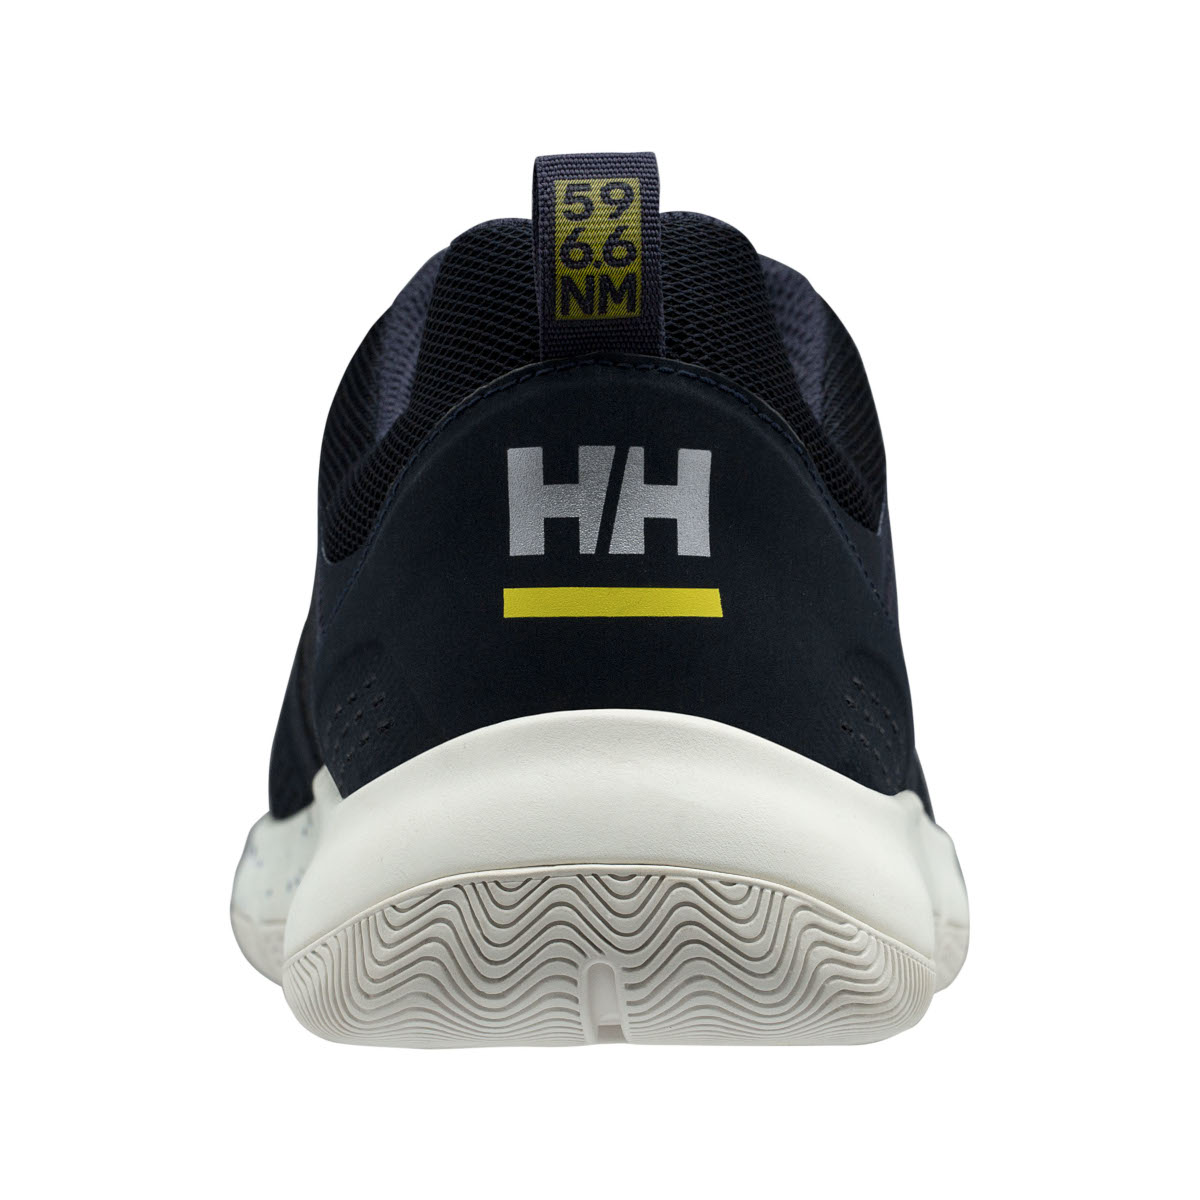 Helly Hansen Skagen F-1 chaussures de voile offshore hommes bleu marine, taille 42,5